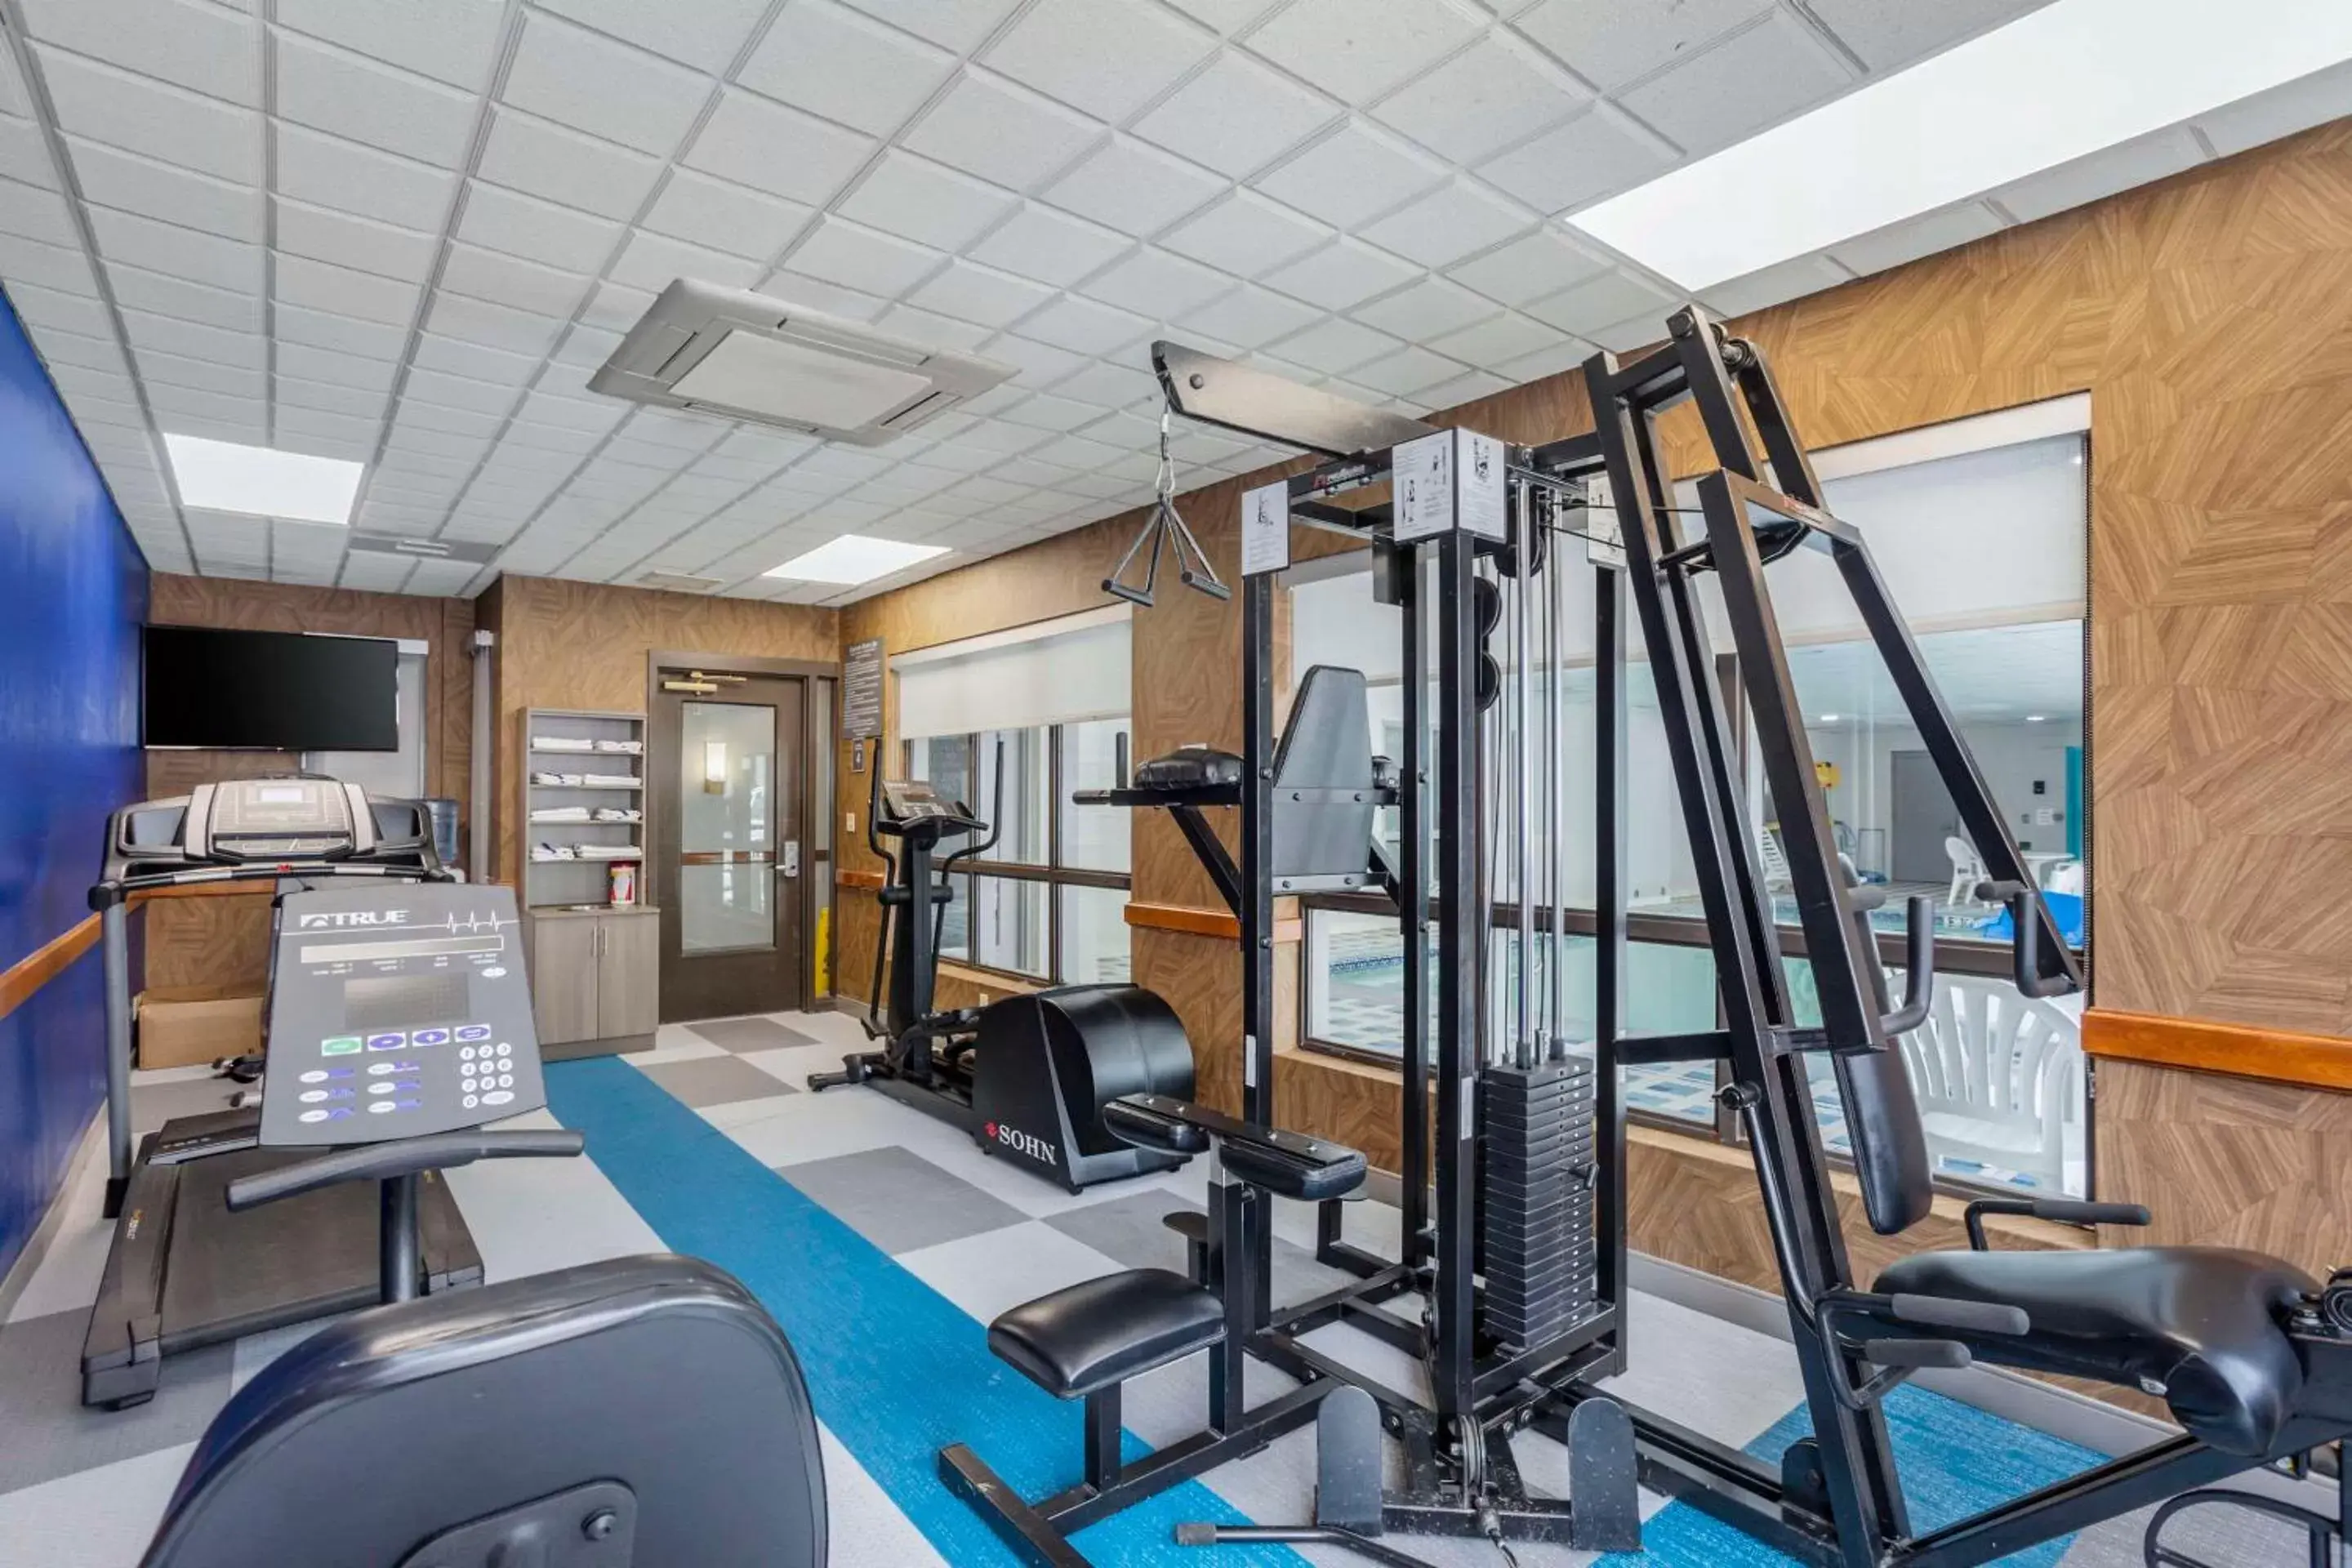 Fitness centre/facilities, Fitness Center/Facilities in Comfort Inn & Suites Voorhees - Mt Laurel